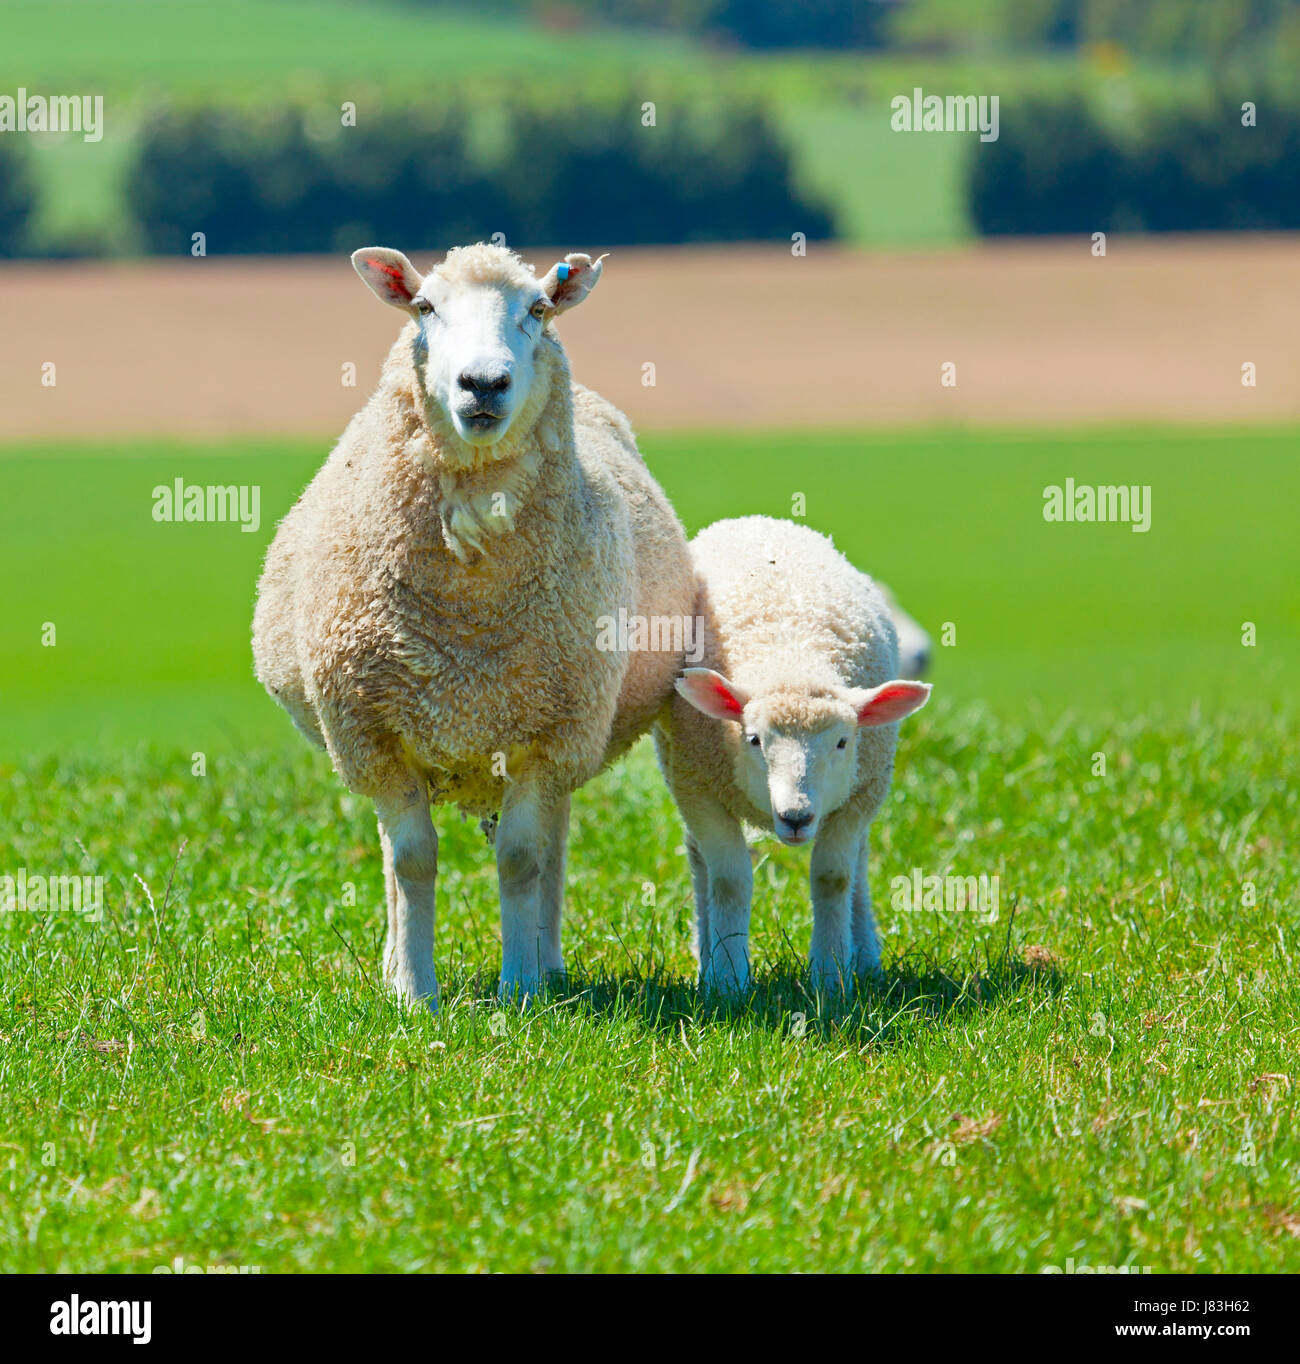 Agricoltura animale di allevamento allevamento di pecore pascoli erba di prato prato verde collina di agnello Foto Stock